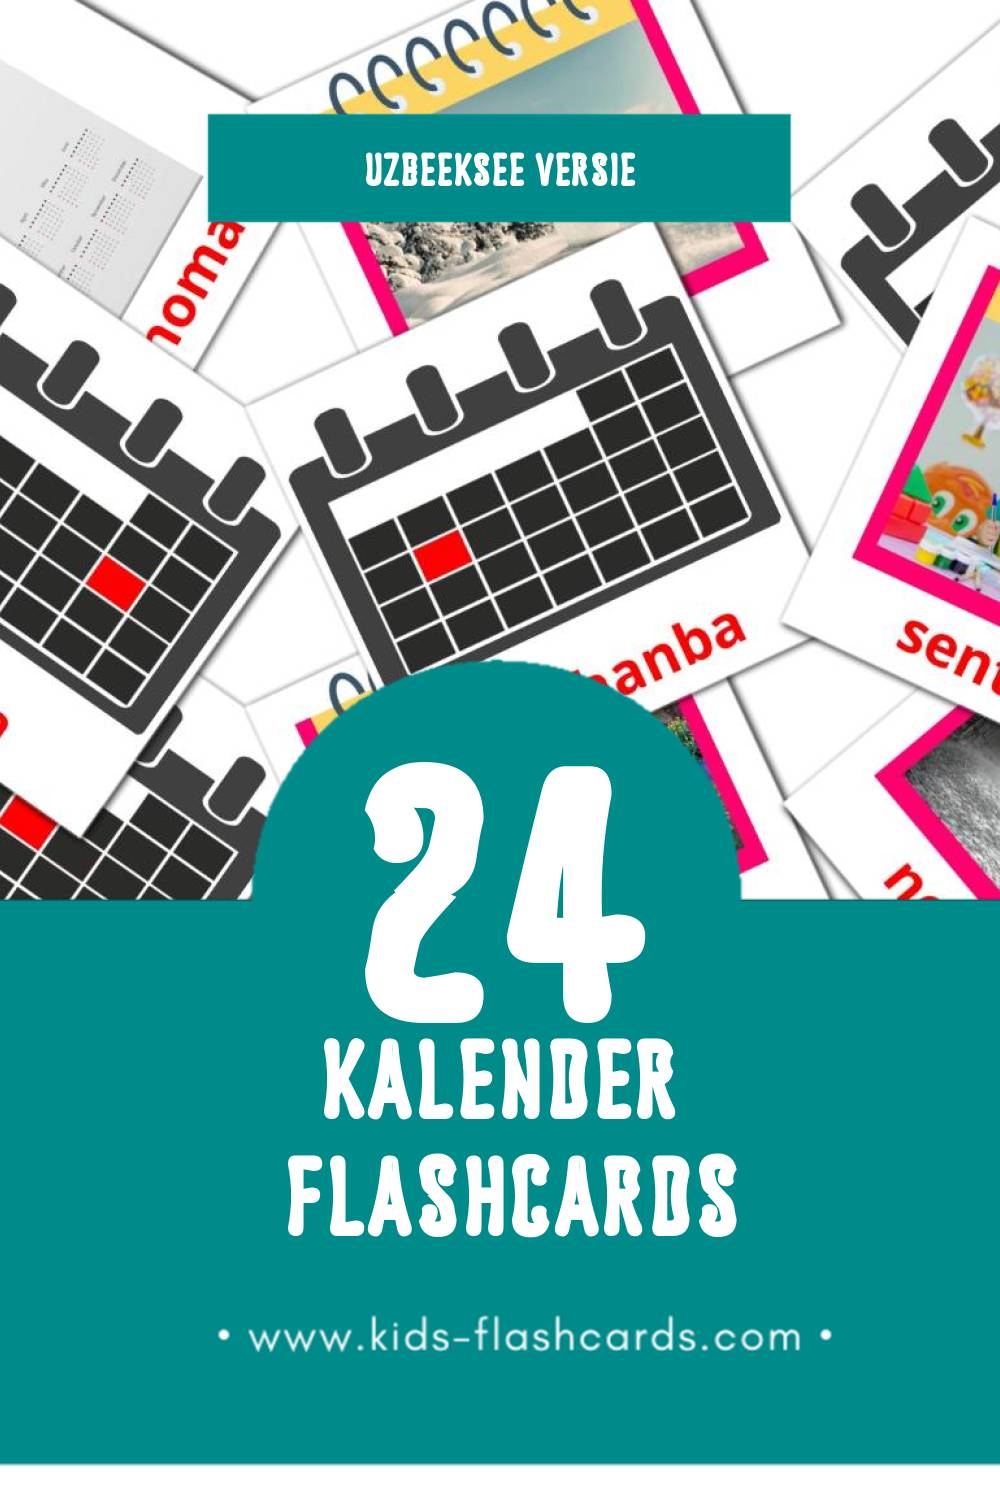 Visuele Yilnoma Flashcards voor Kleuters (24 kaarten in het Uzbeekse)